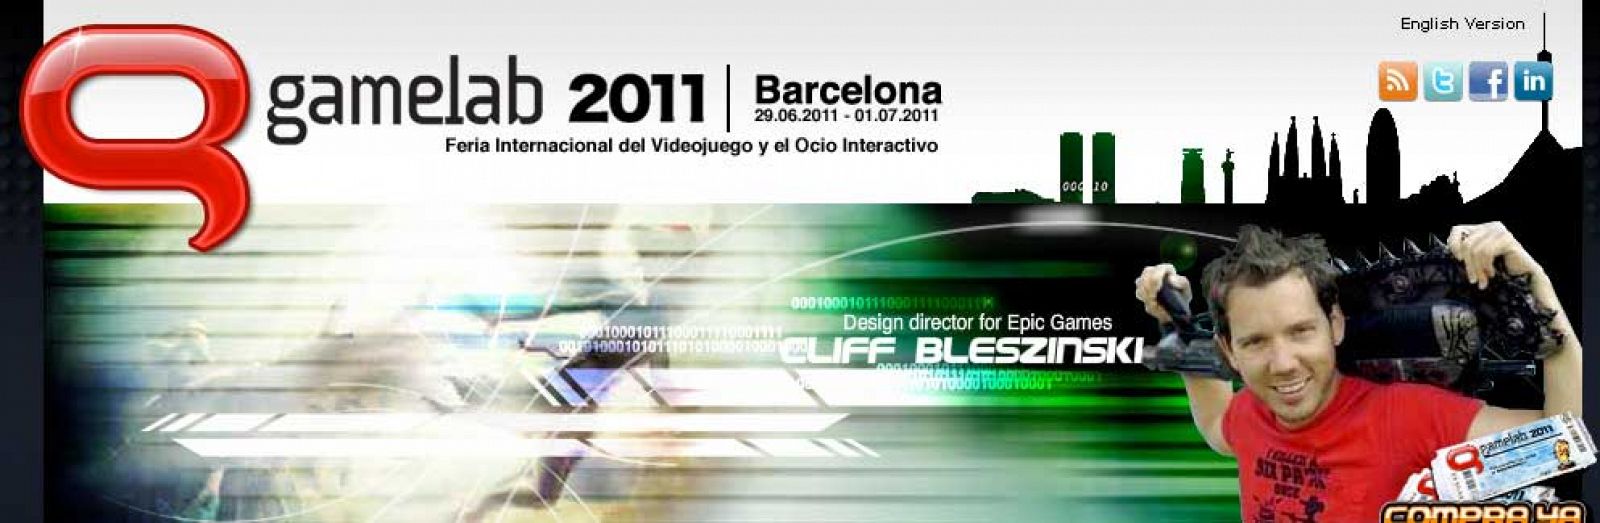 La séptima edición de Gamelab, la Feria Internacional del Videojuego y el Ocio Interactivo, se celebrará del 29 de junio al 1 de julio en Barcelona